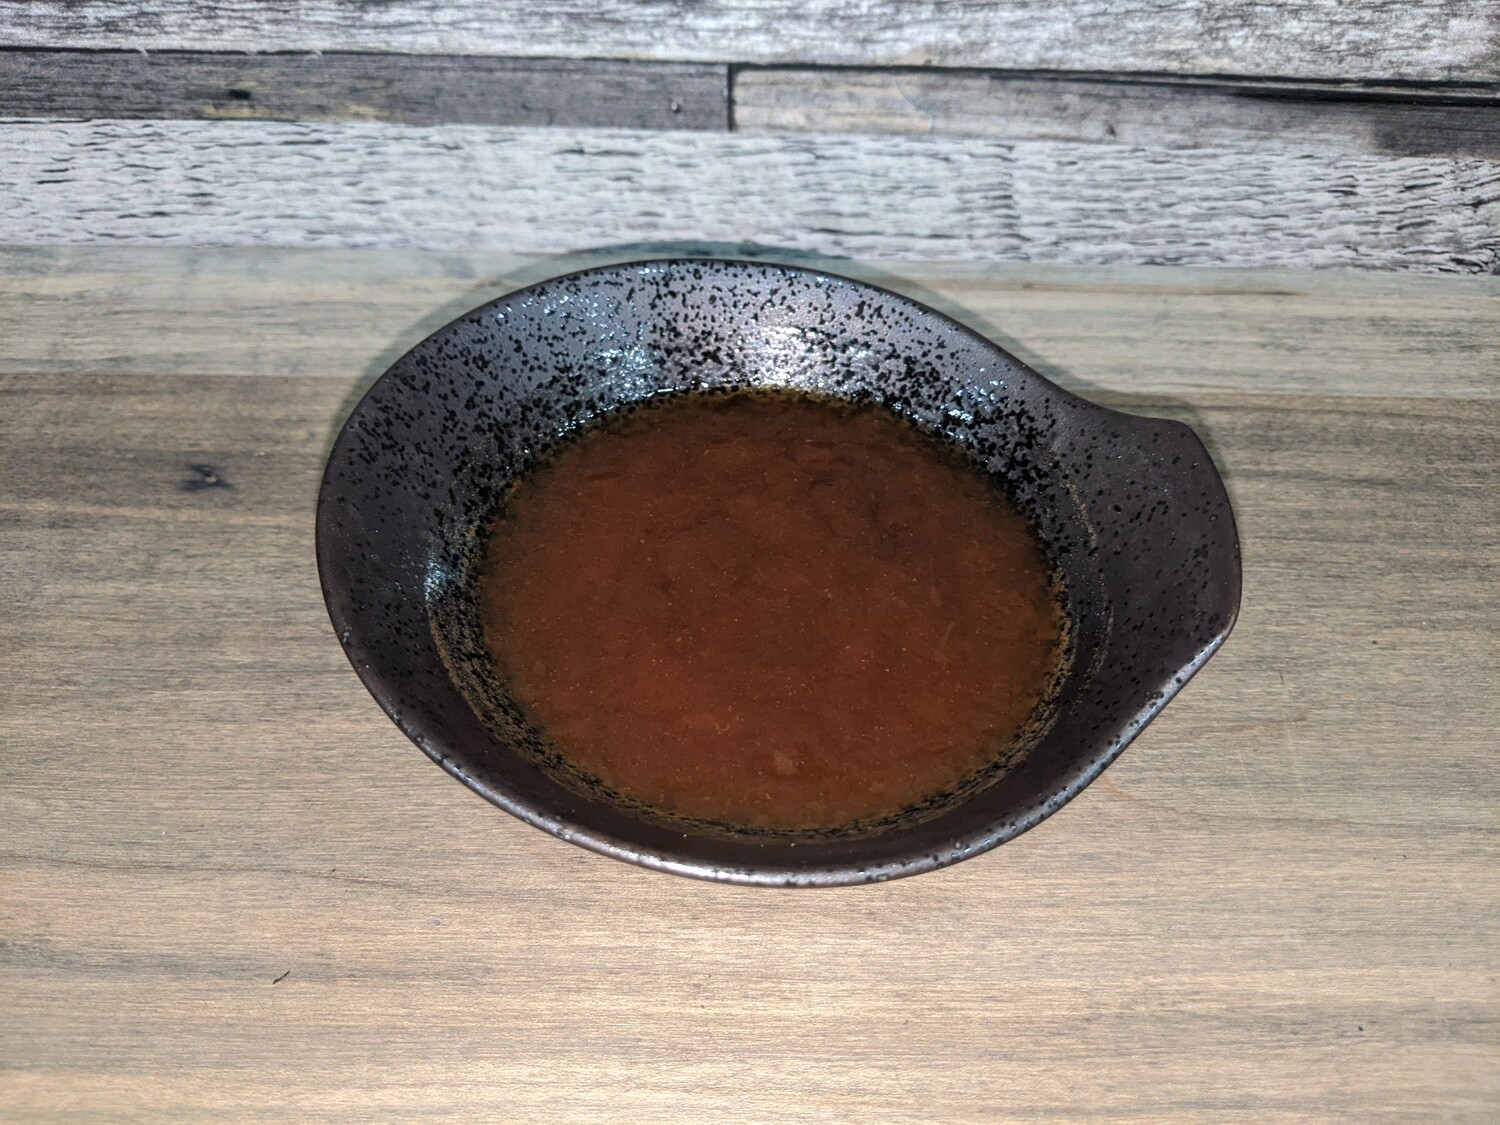 Teriyaki sauce